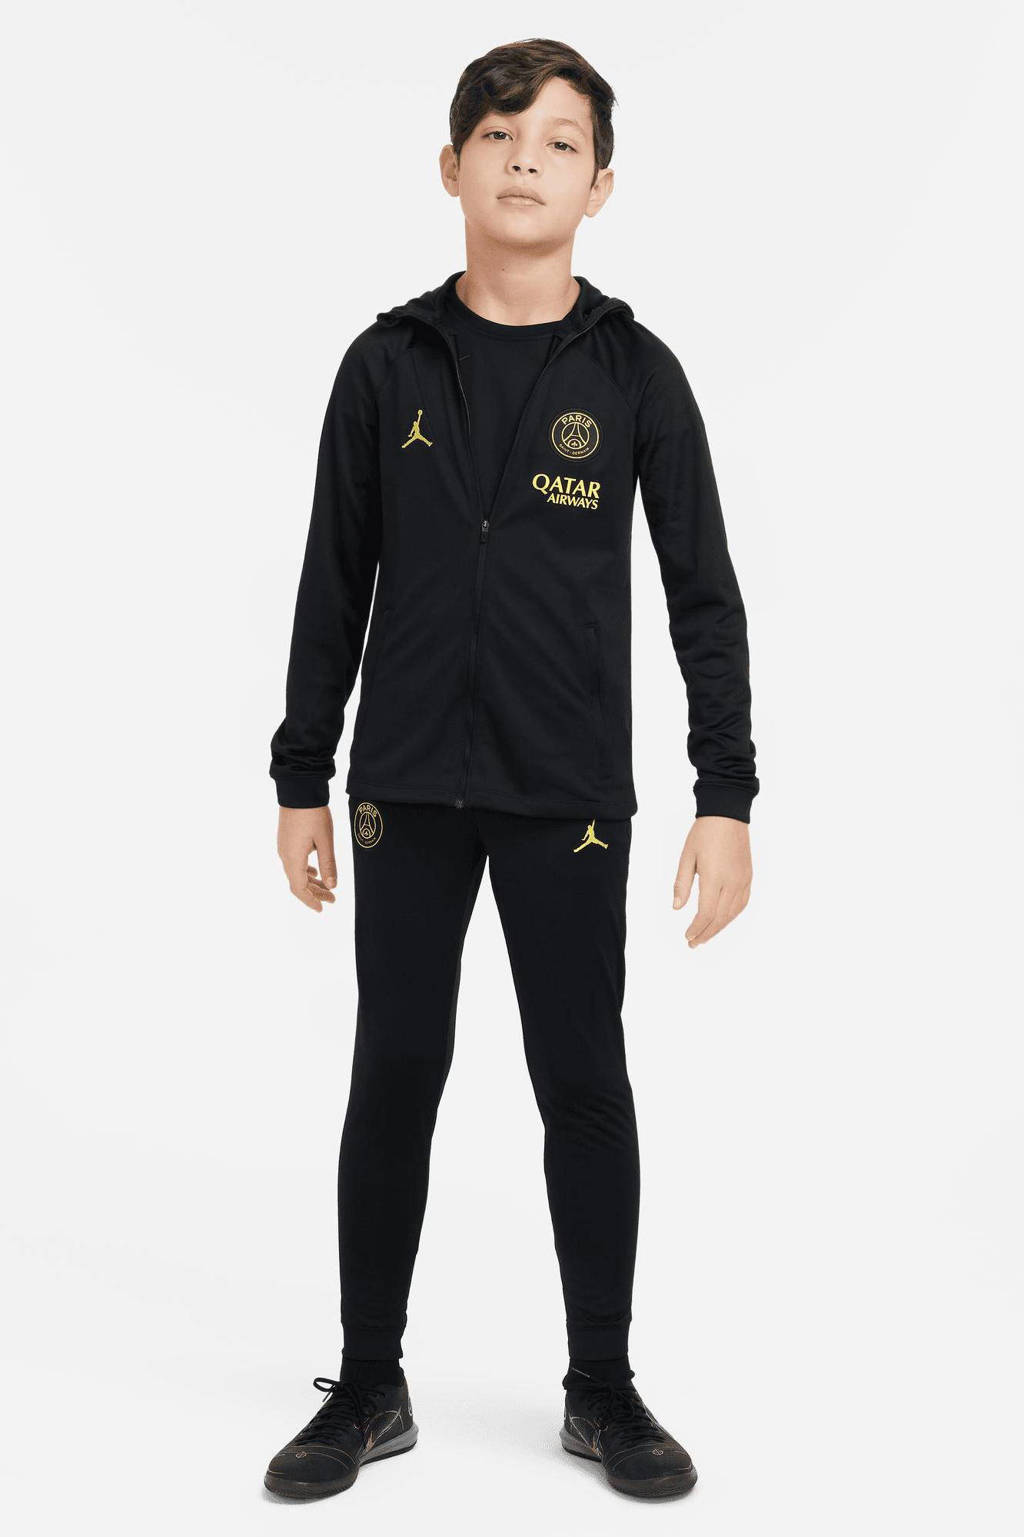 oorsprong draaipunt Rood Nike Junior Paris Saint Germain trainingspak zwart/geel | wehkamp